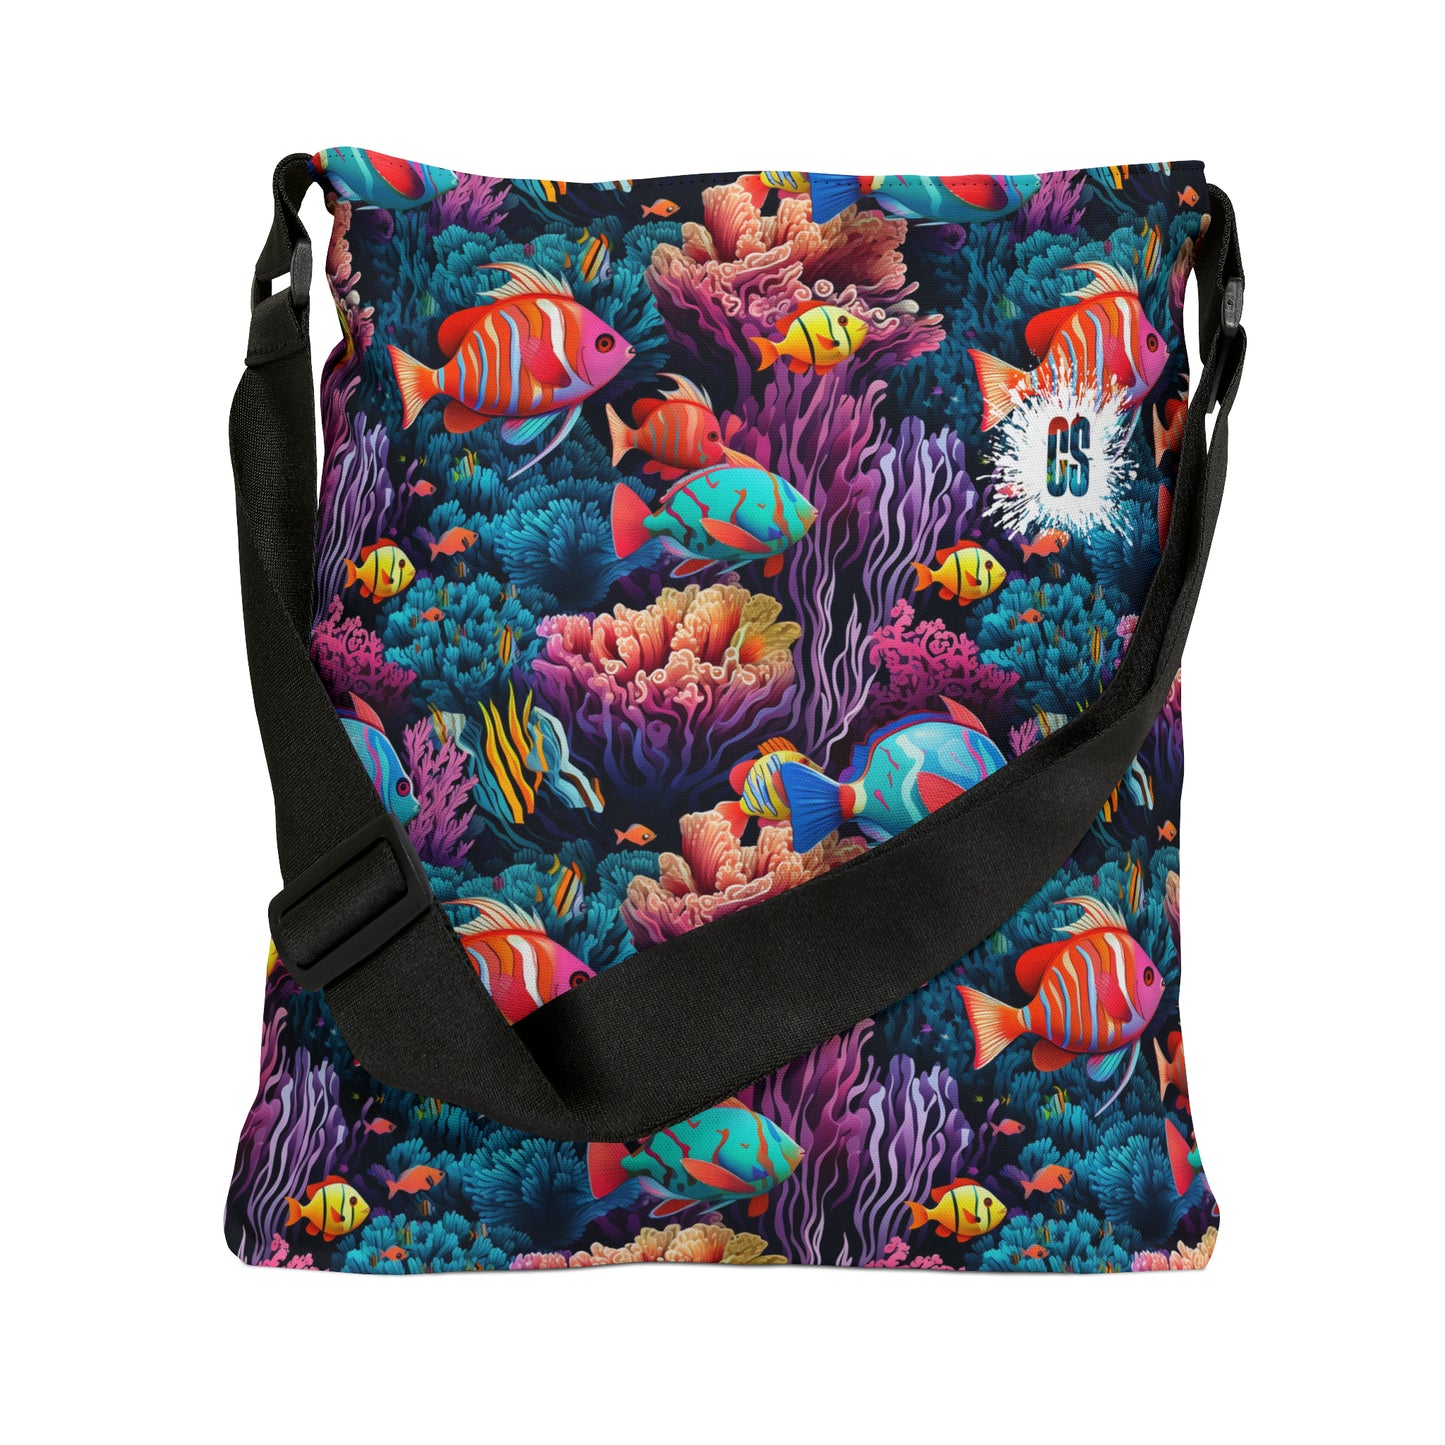 Deep Sea Life Dance Adjustable Tote Bag